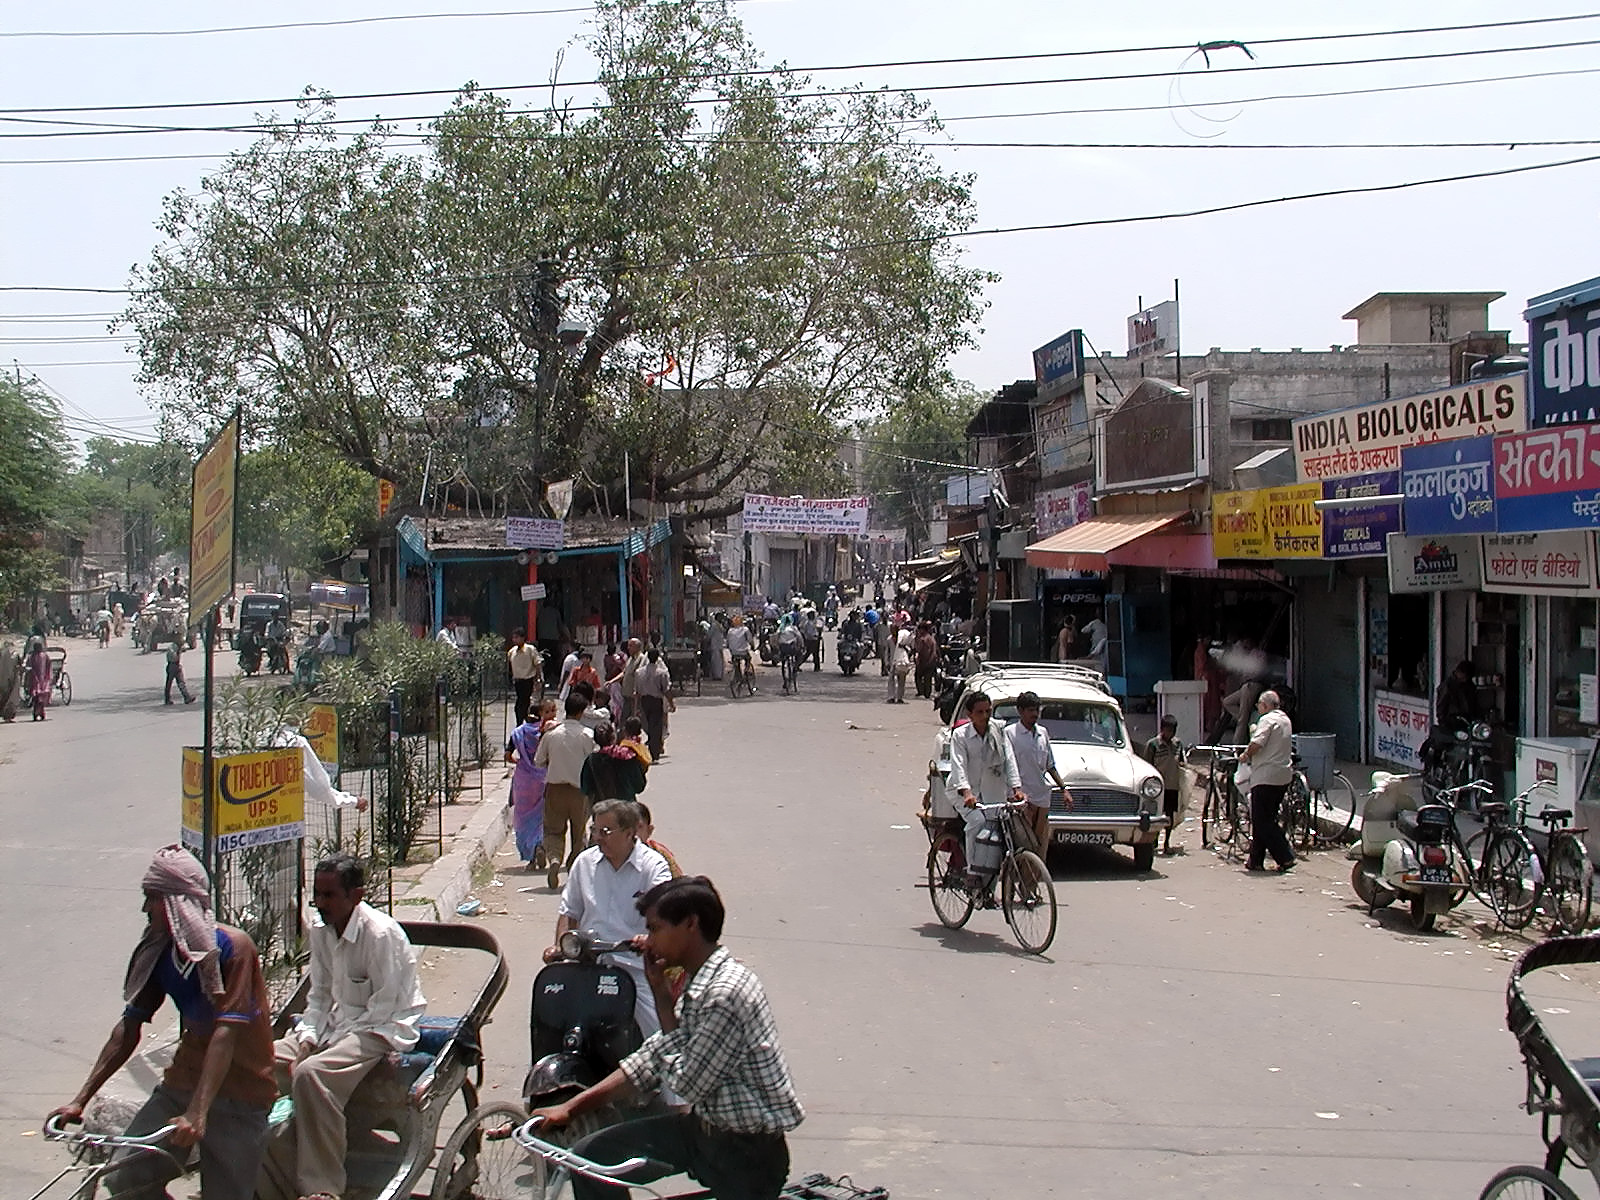 10-Jun-2001 11:20 - Agra - Street scene in Agra